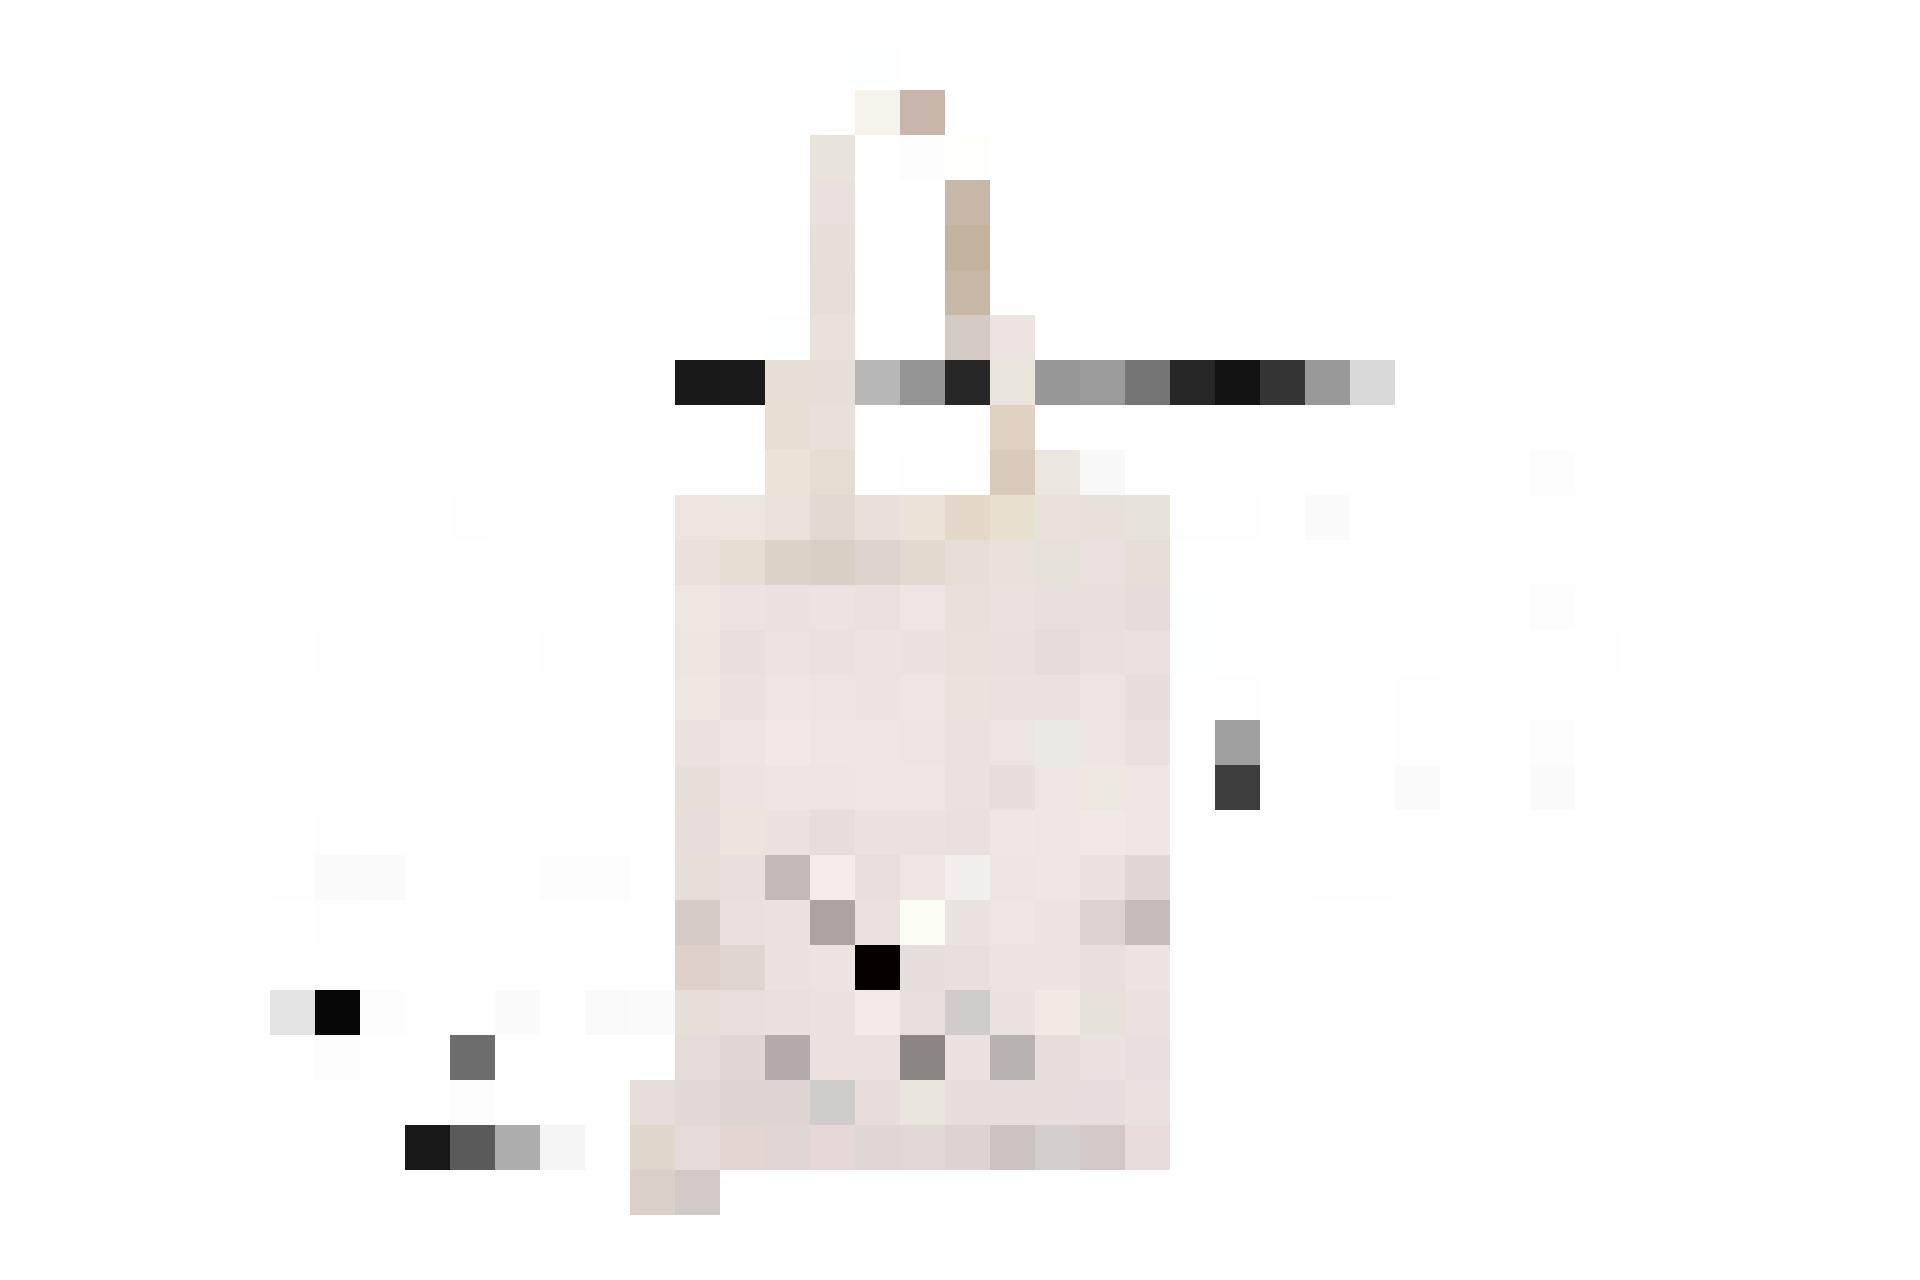 Un lama sur l’épaule: sac en coton avec impression lama, 20 × 25 cm, 5.95 francs, chez Jumbo.